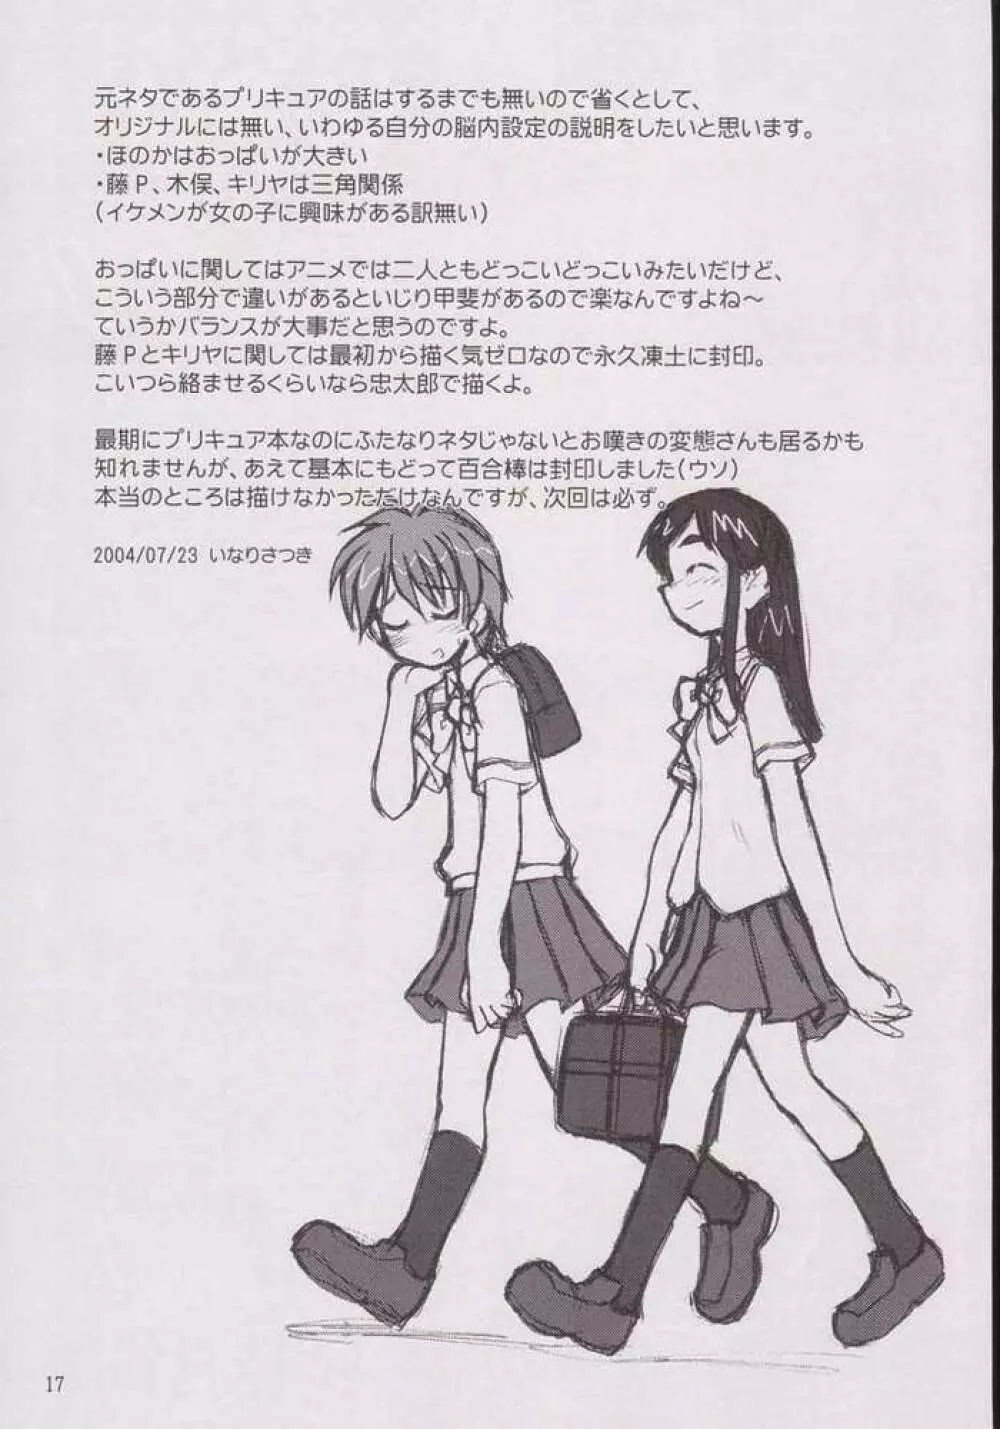 なぎさの『・・・』 Nagisa no Kagikakko 14ページ